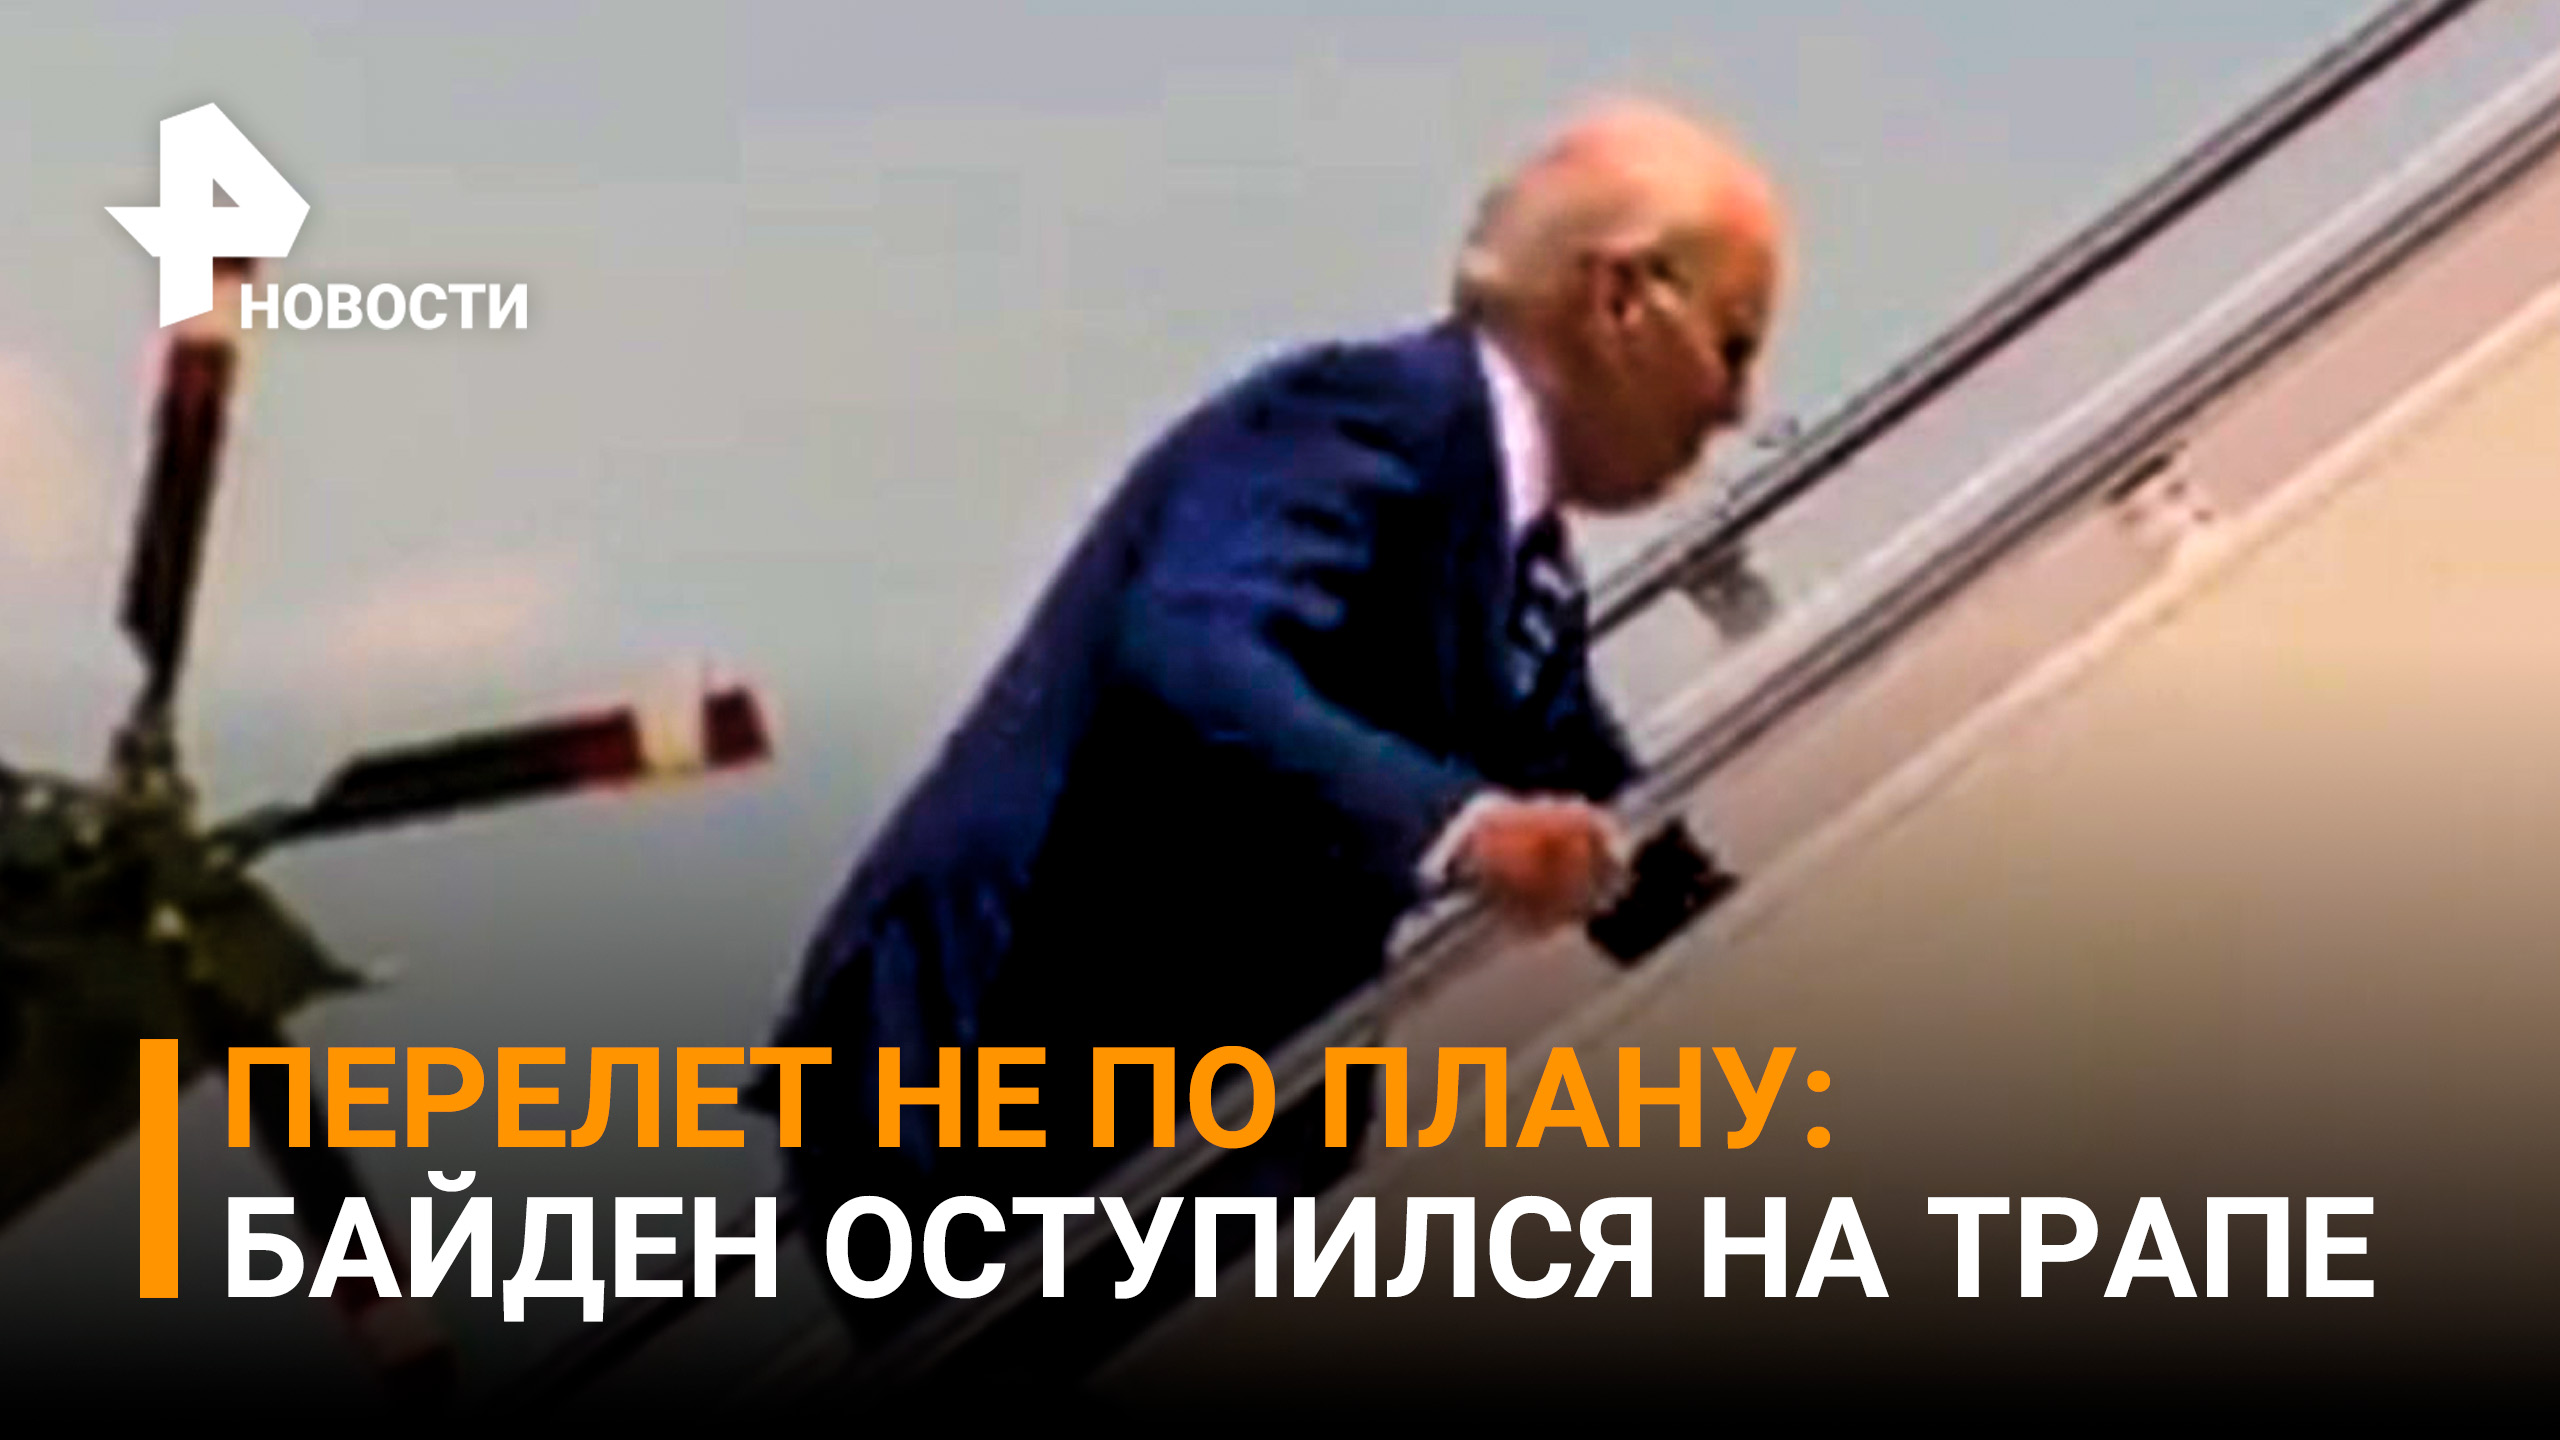 Байден вновь оступился на трапе самолета / РЕН Новости